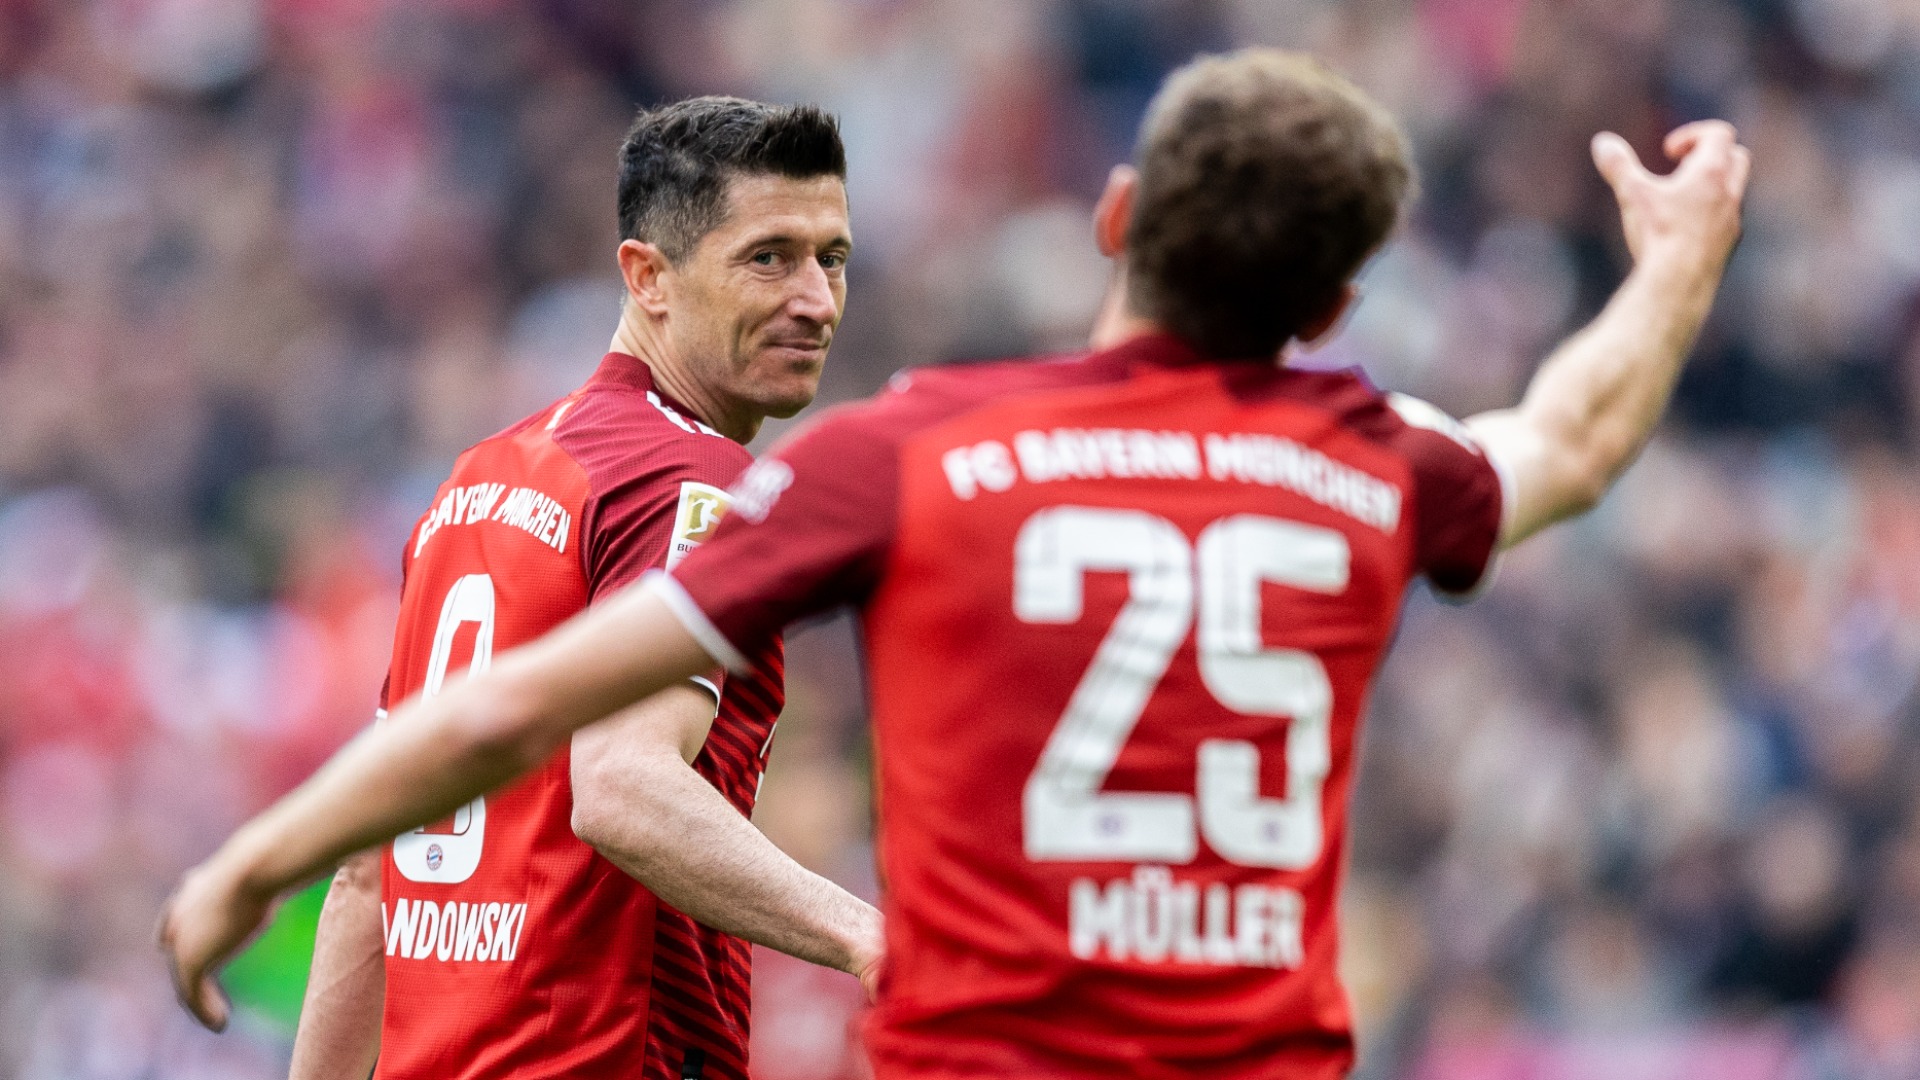 Lewandowki cùng danh hiệu Bundesliga thứ 8 liên tiếp với Bayern Munich. Vẫn còn điều gì đó lấn cấn chưa trọn vẹn (phần 2)